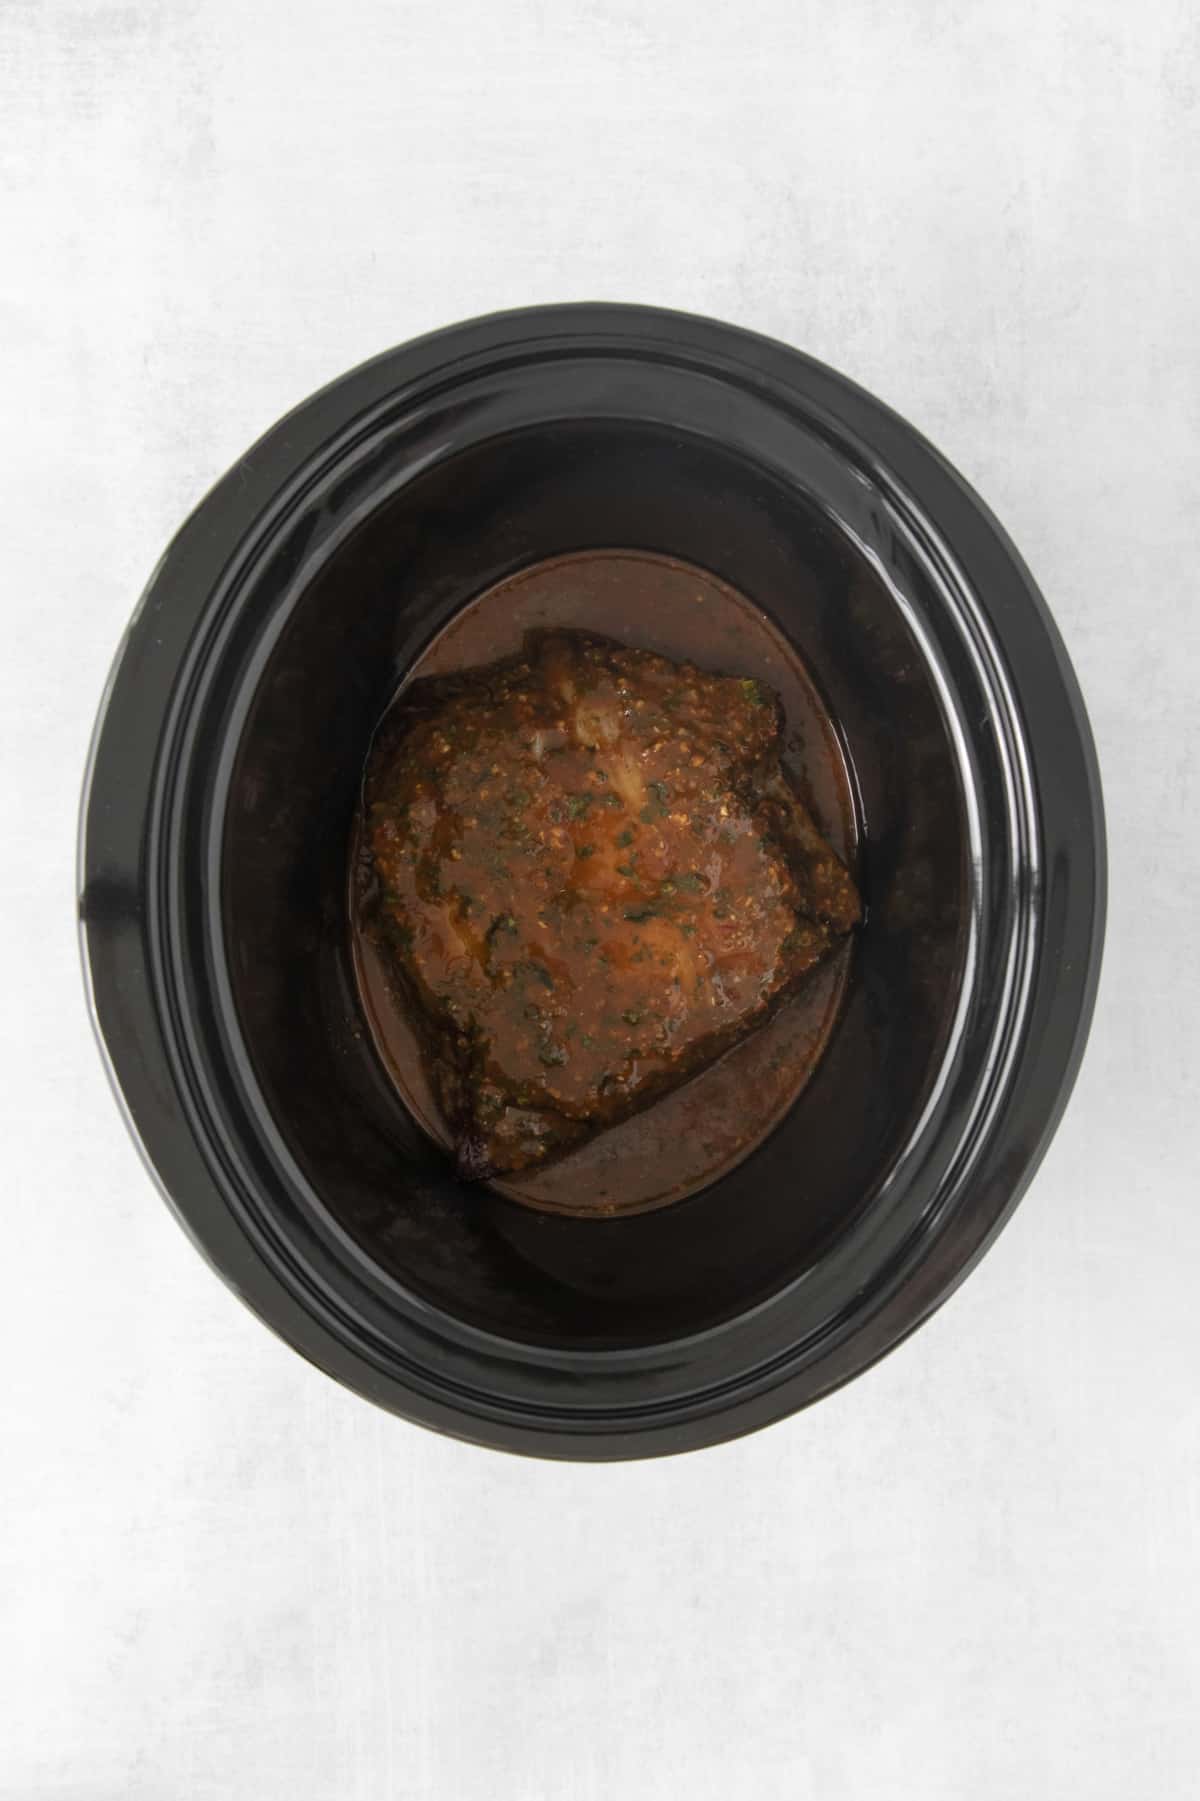 seared steak covered in sauce in a crockpot.